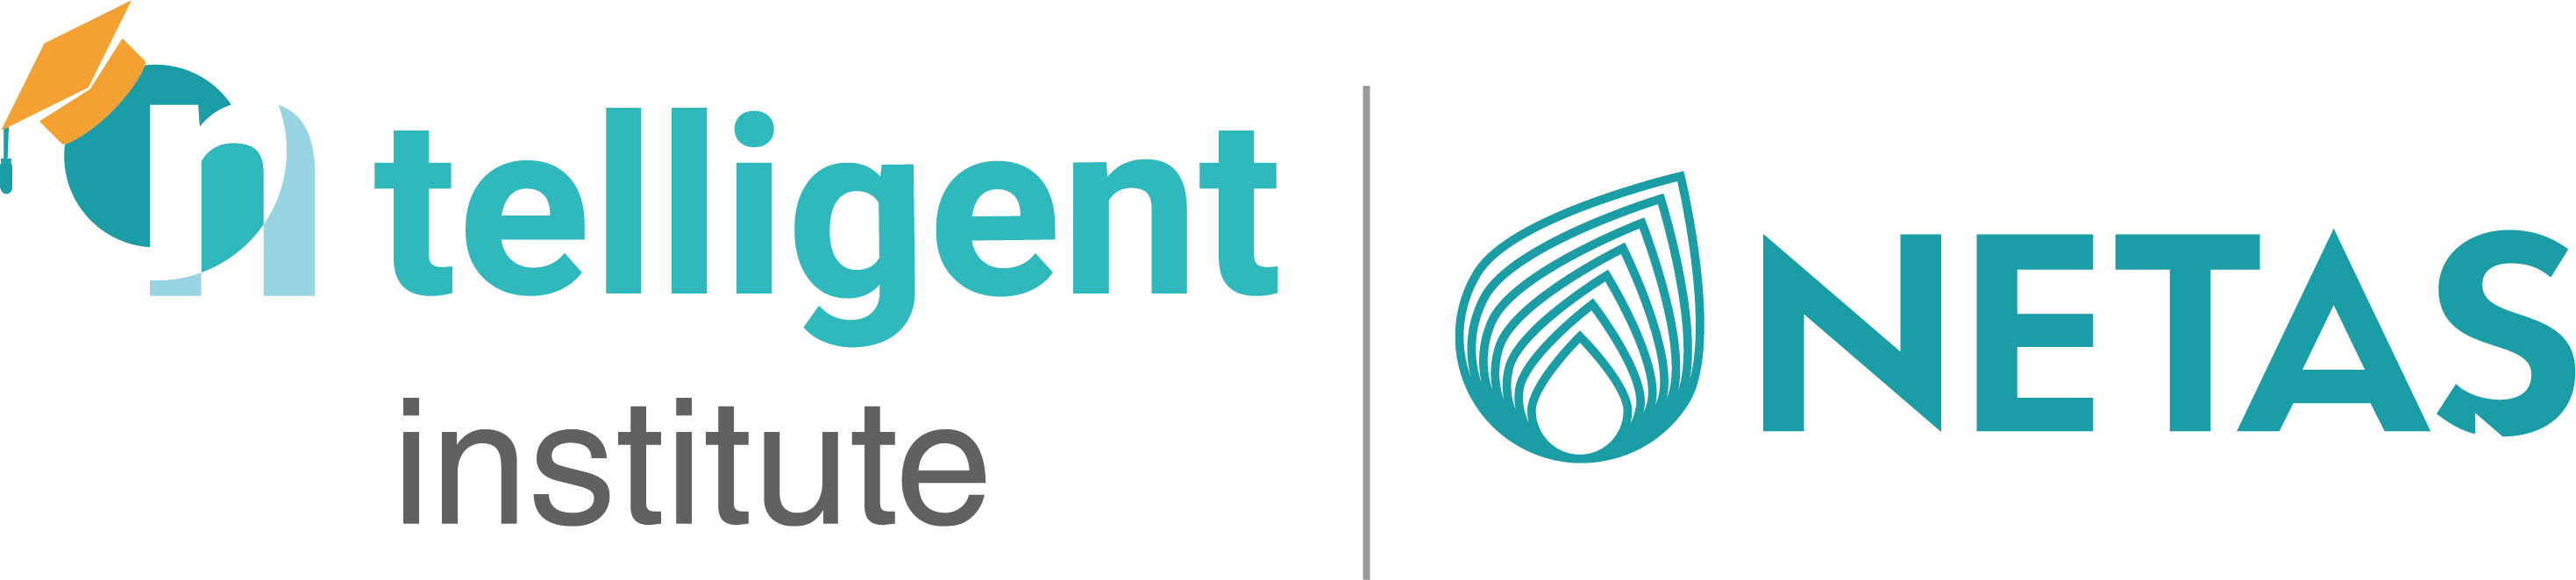 ntelligent institute logo